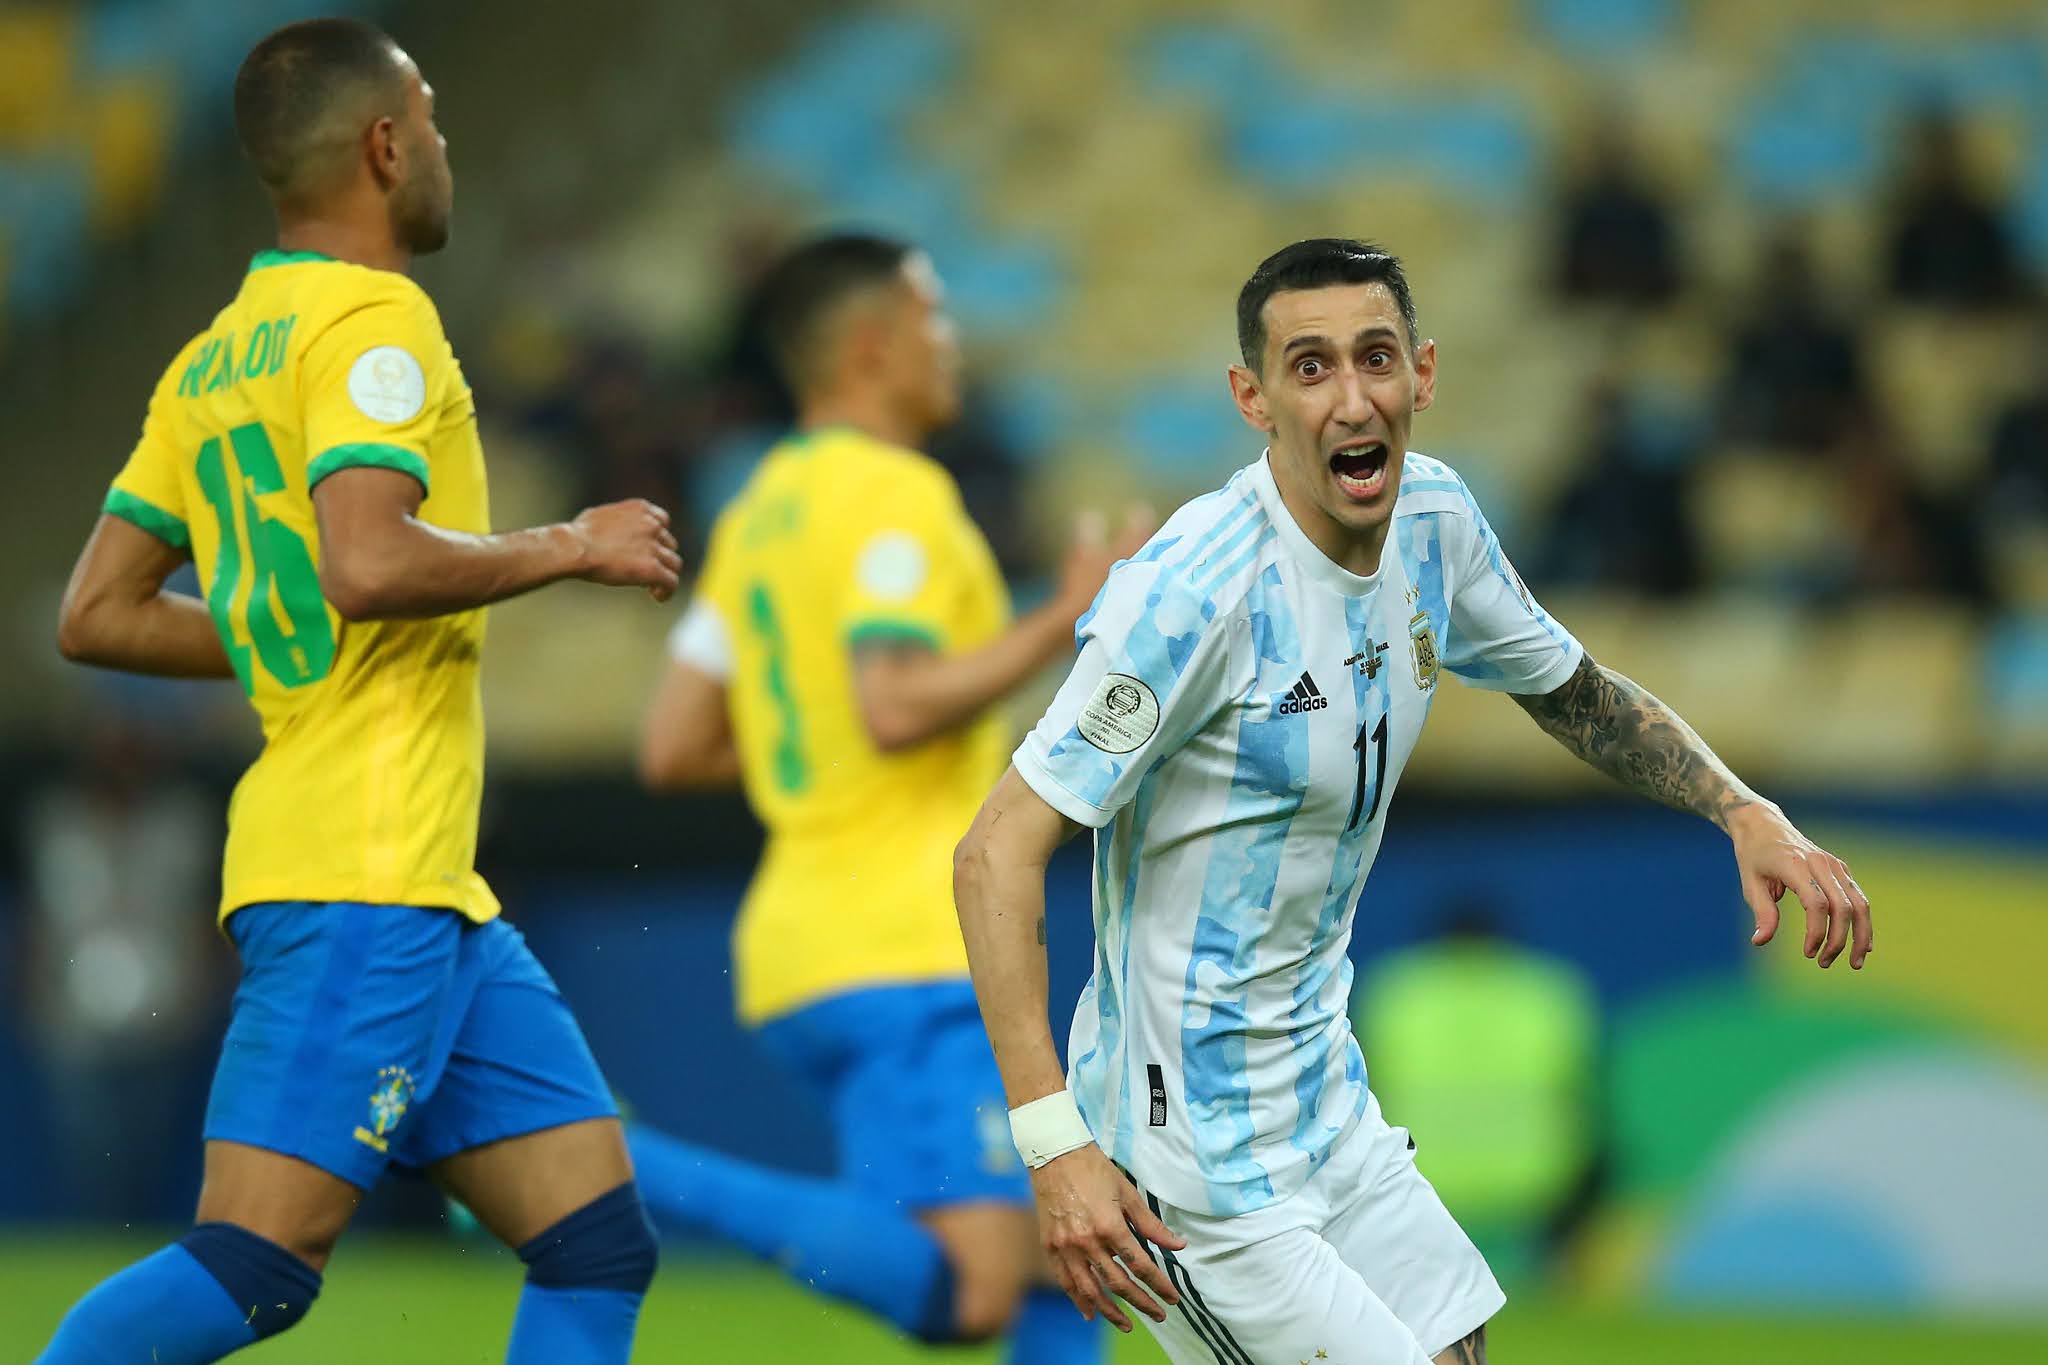 GALERIA DE FOTOS: Las mejores imágenes de Argentina campeón de la Copa América 2021